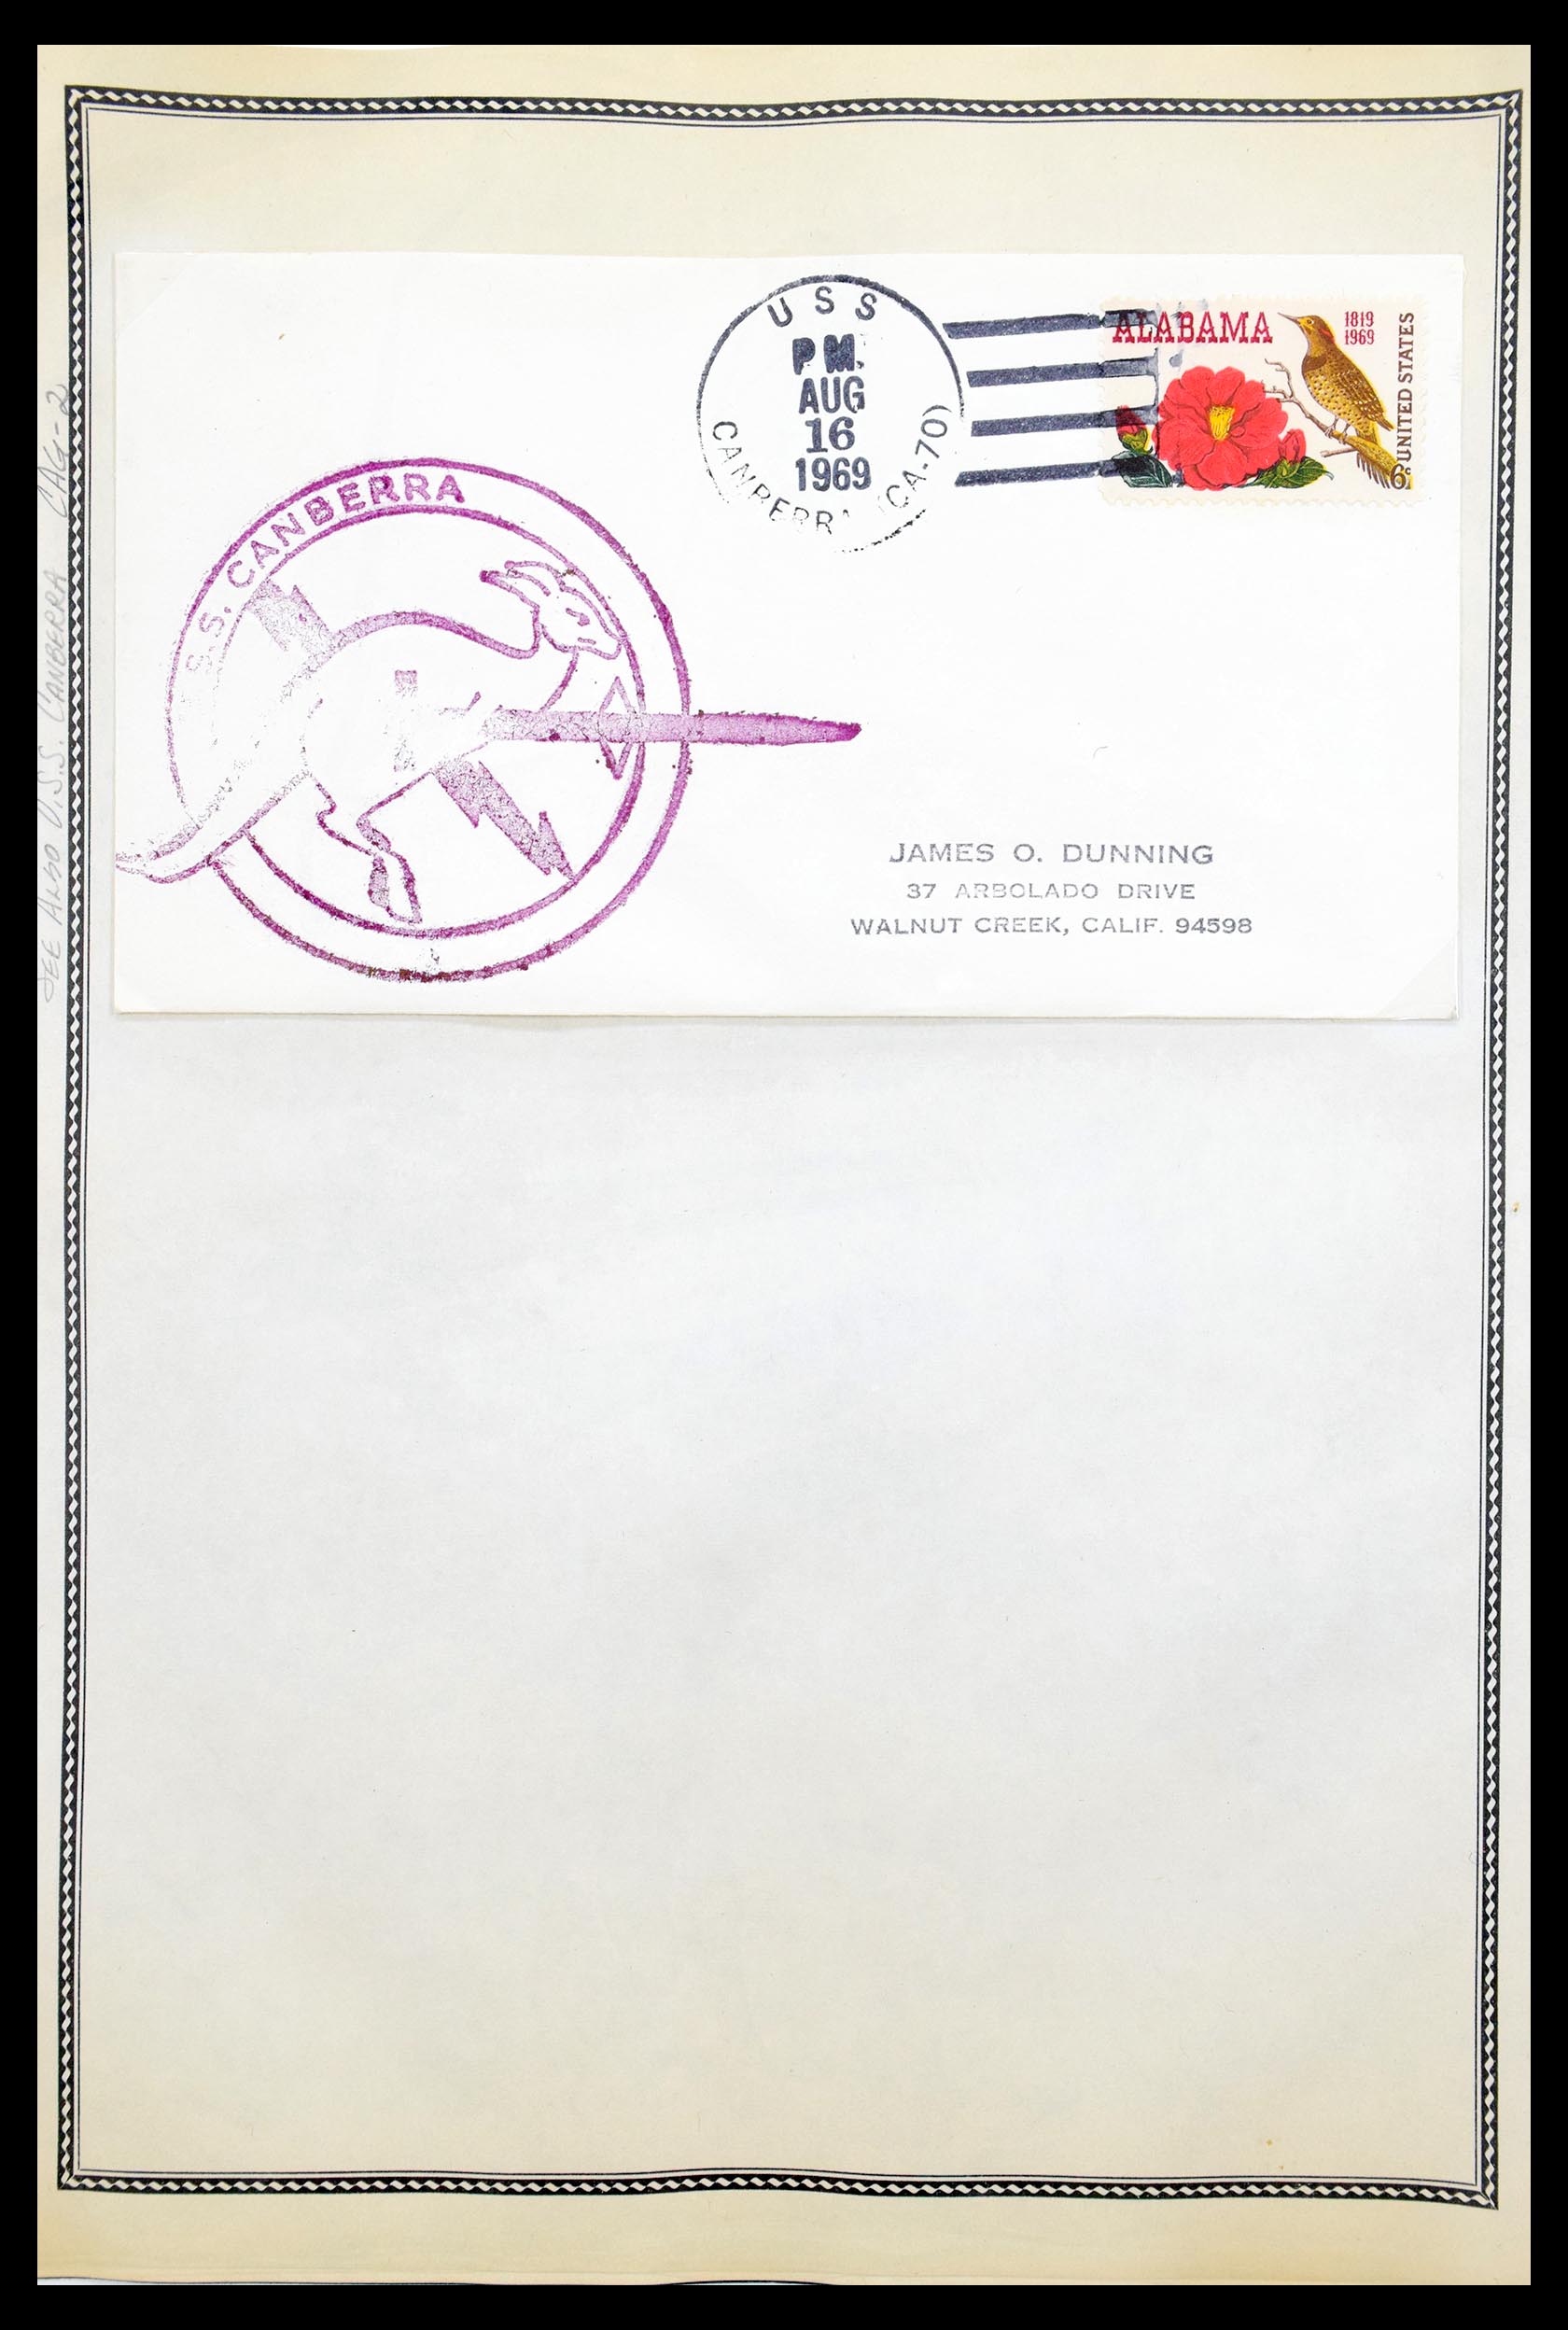 30341 085 - 30341 USA scheepspost brieven 1930-1970.